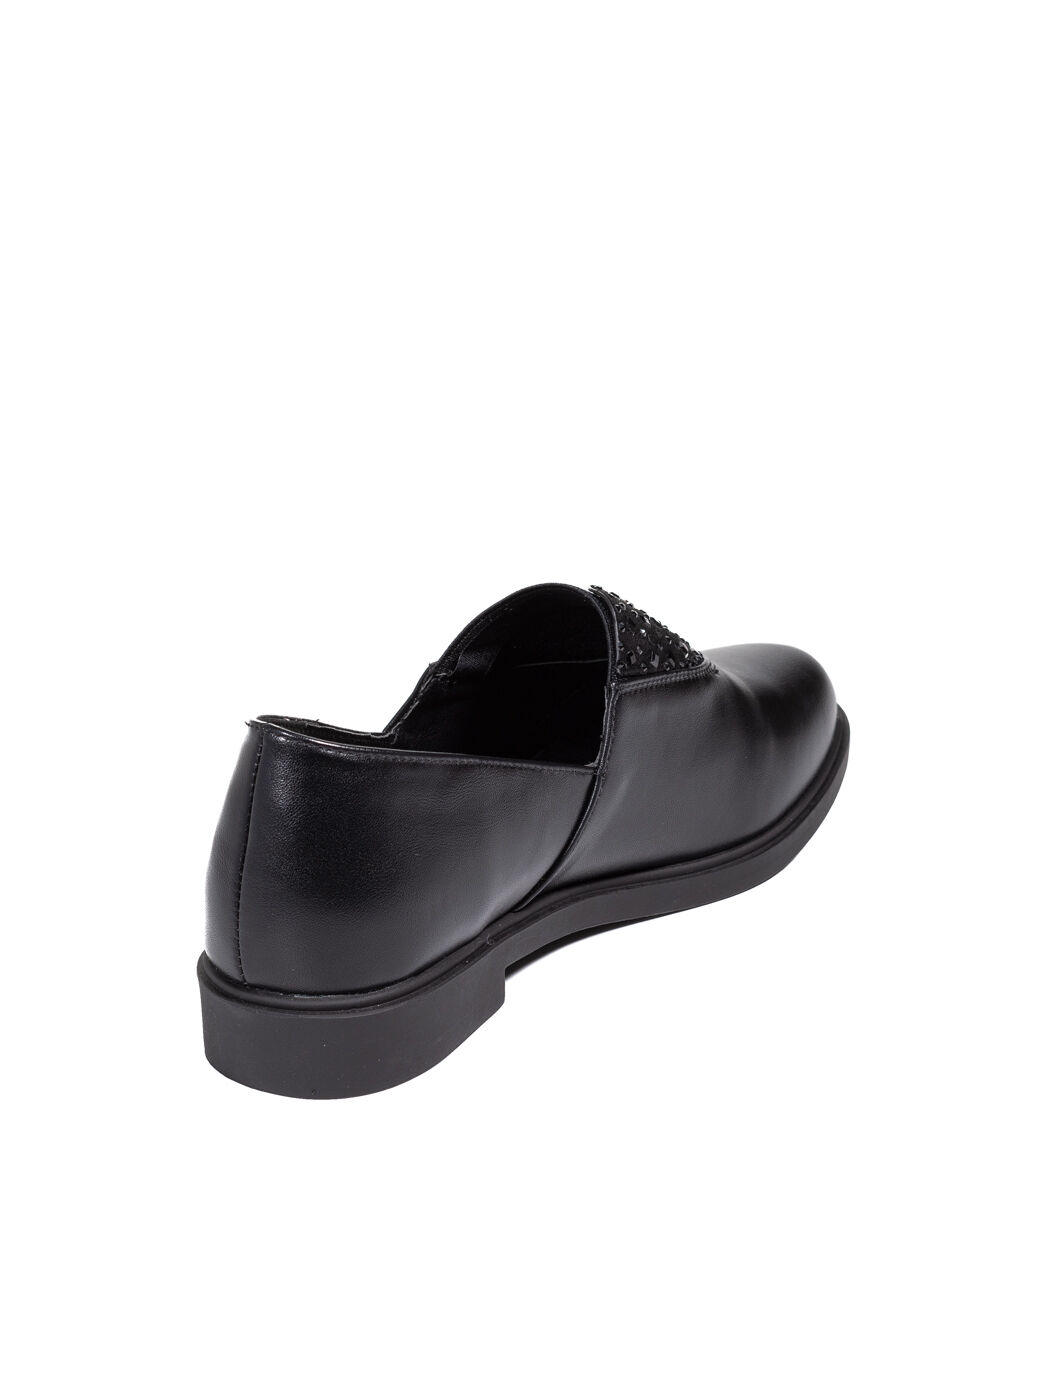 Туфли женские черные экокожа каблук устойчивый демисезон вид 1